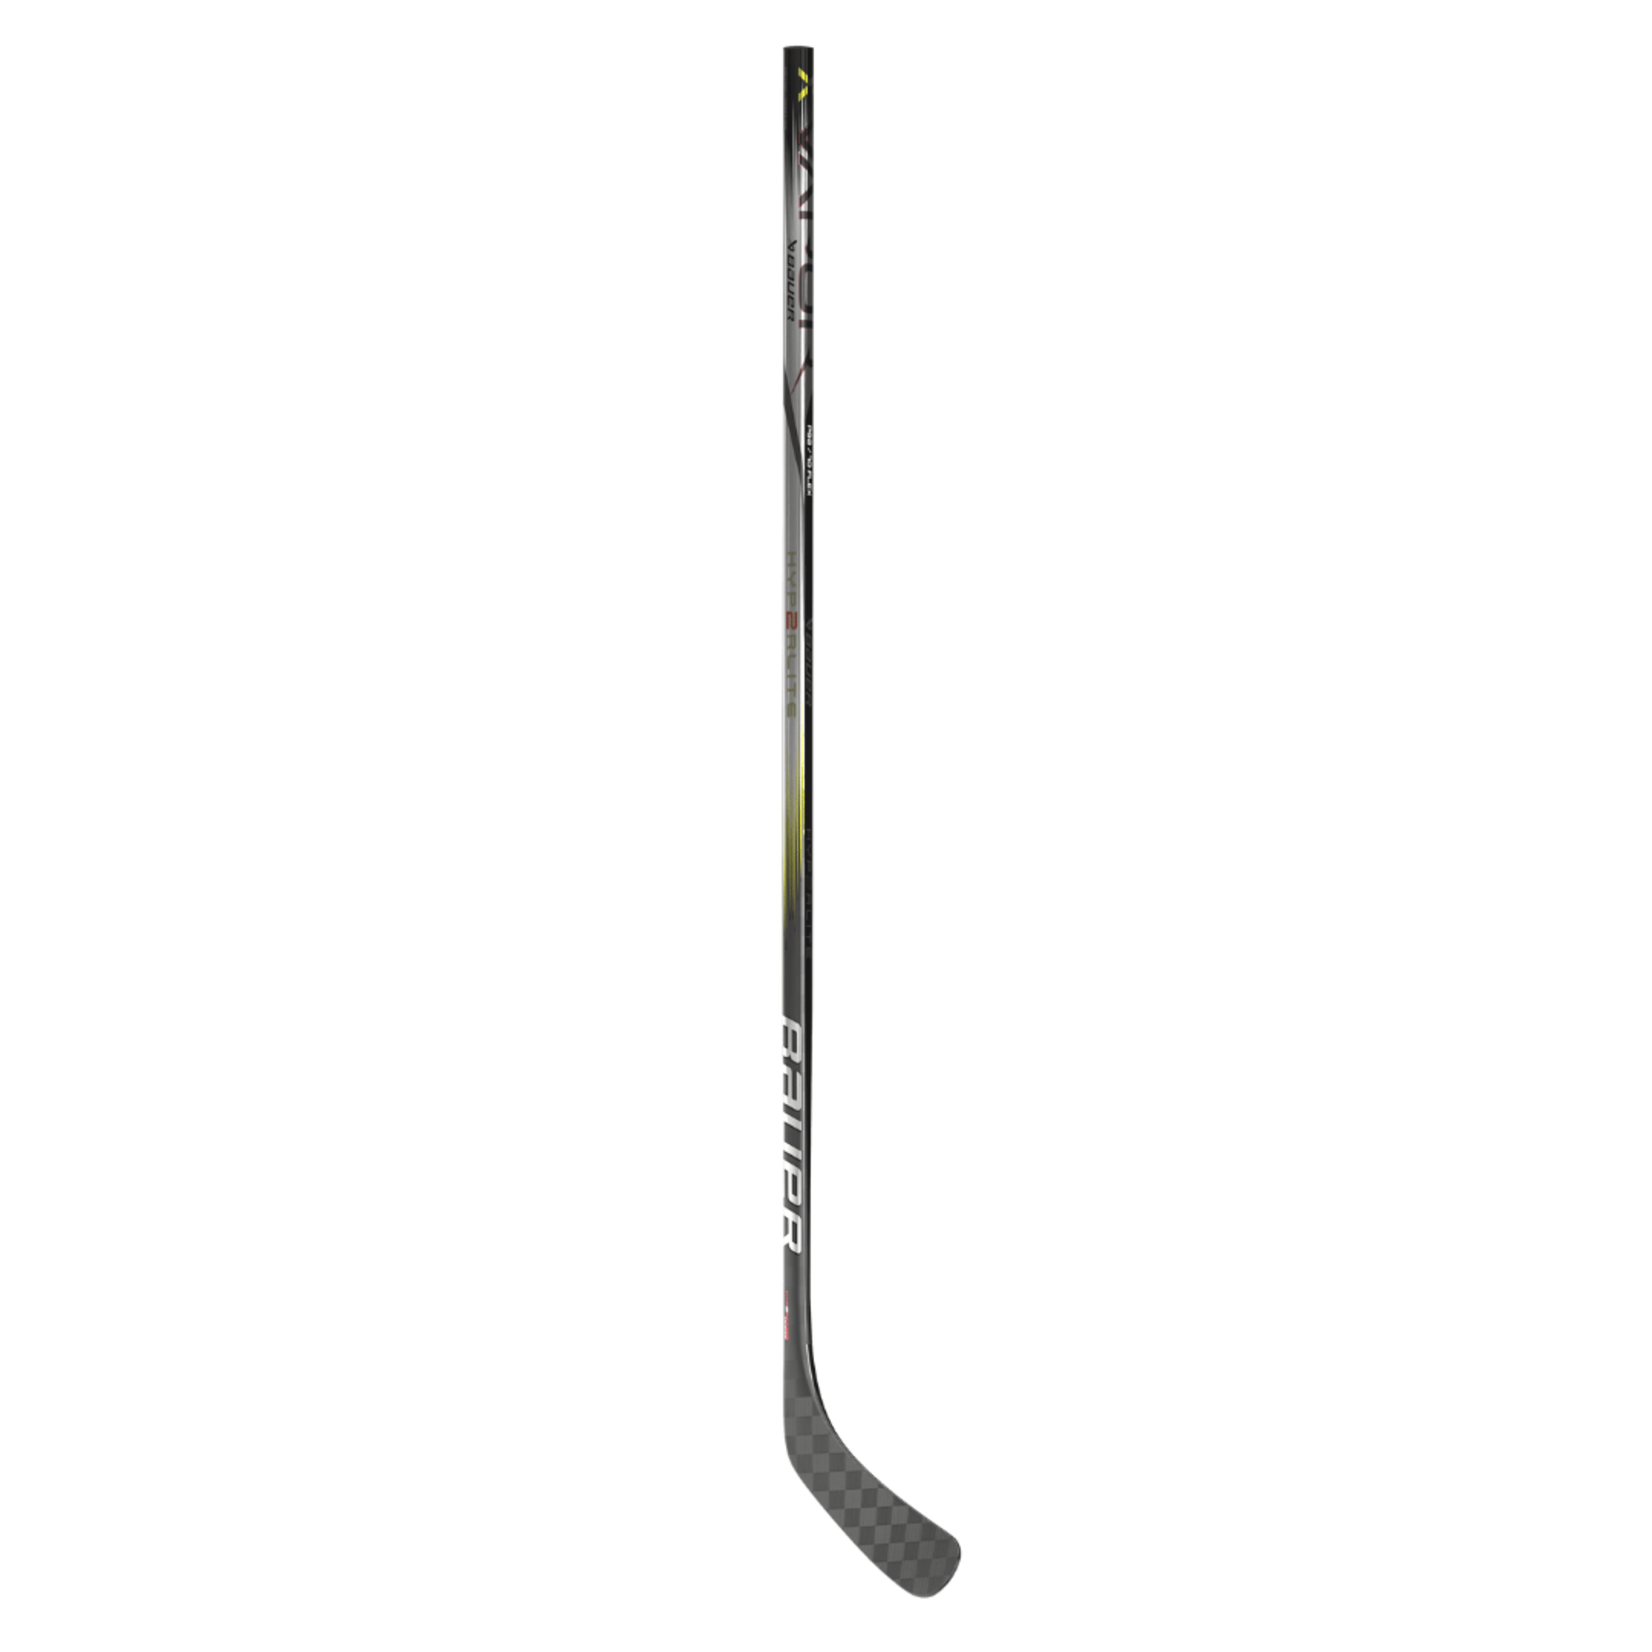 Bauer Bauer Hockey Stick, Vapor Hyperlite2, Grip, Junior 52"